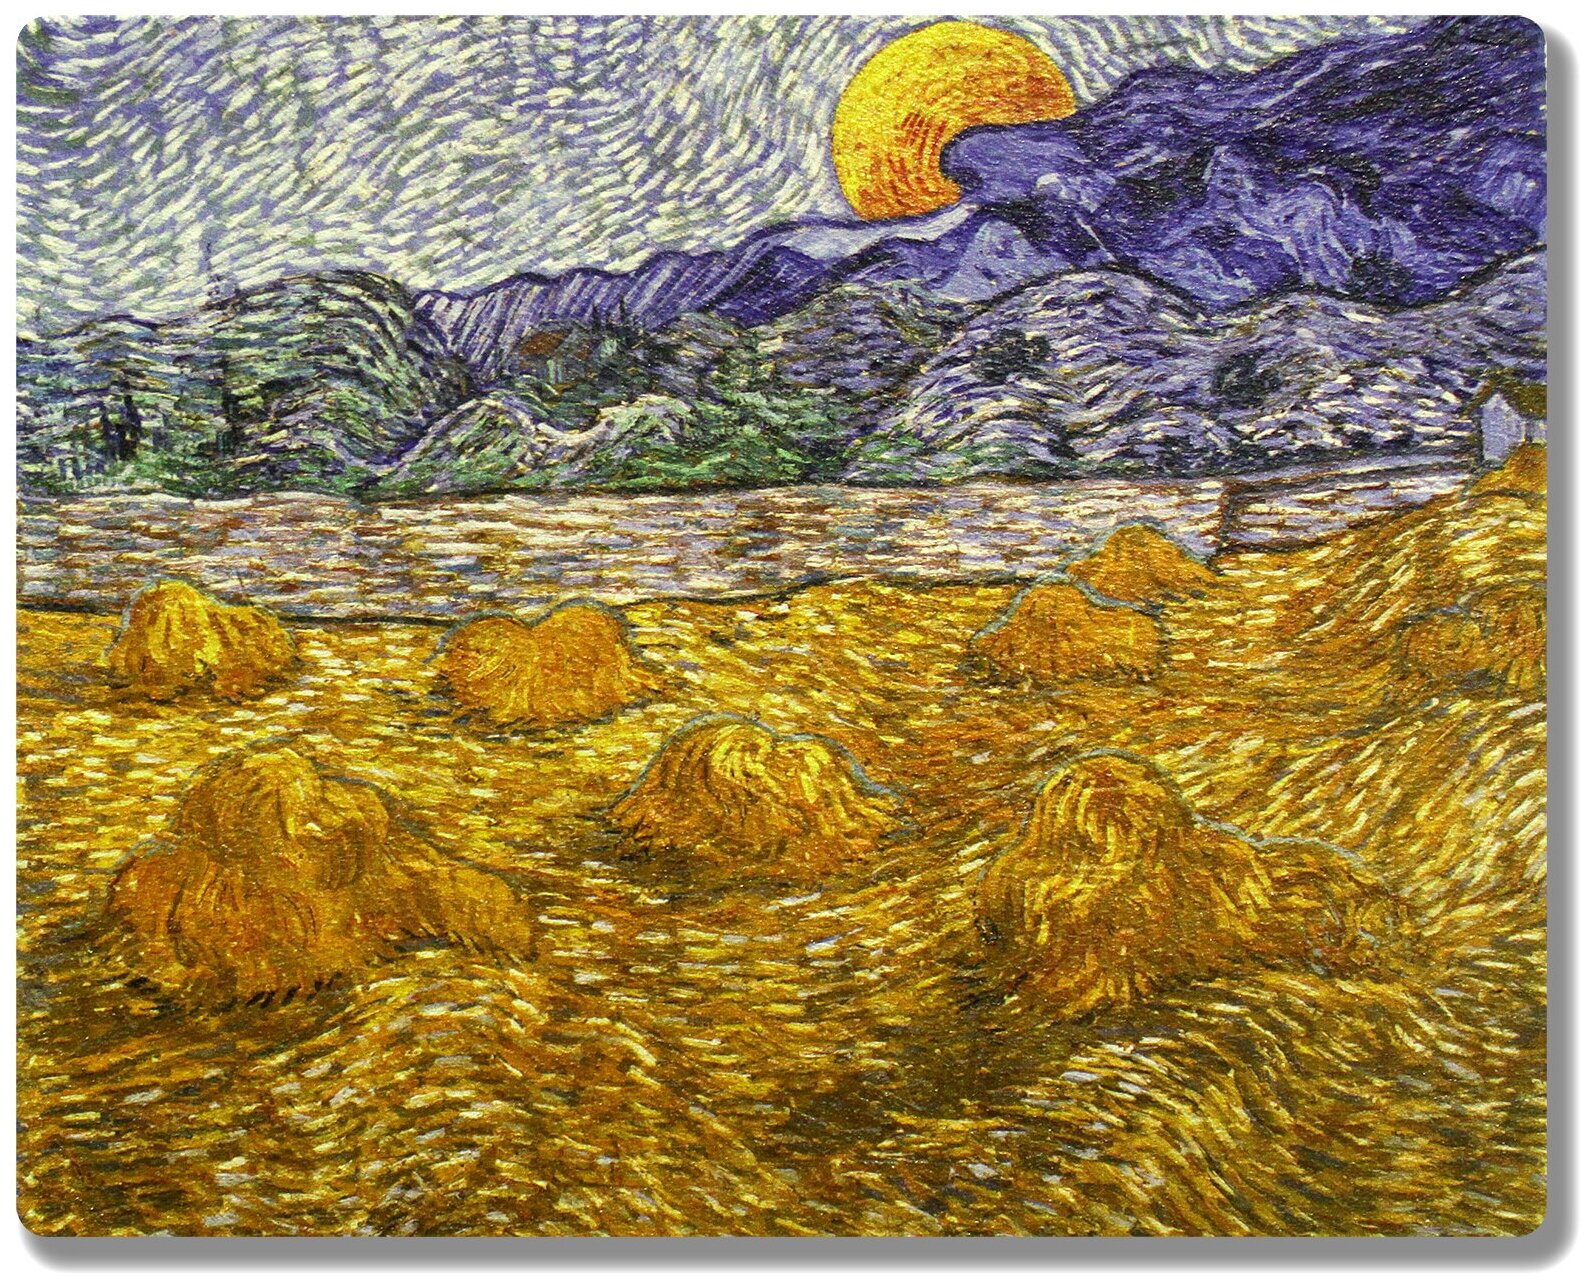 Репродукция картины Винсента Ван Гога "Вечерний пейзаж с восходящей луной". Интерьерная фреска на доске. 30х24см